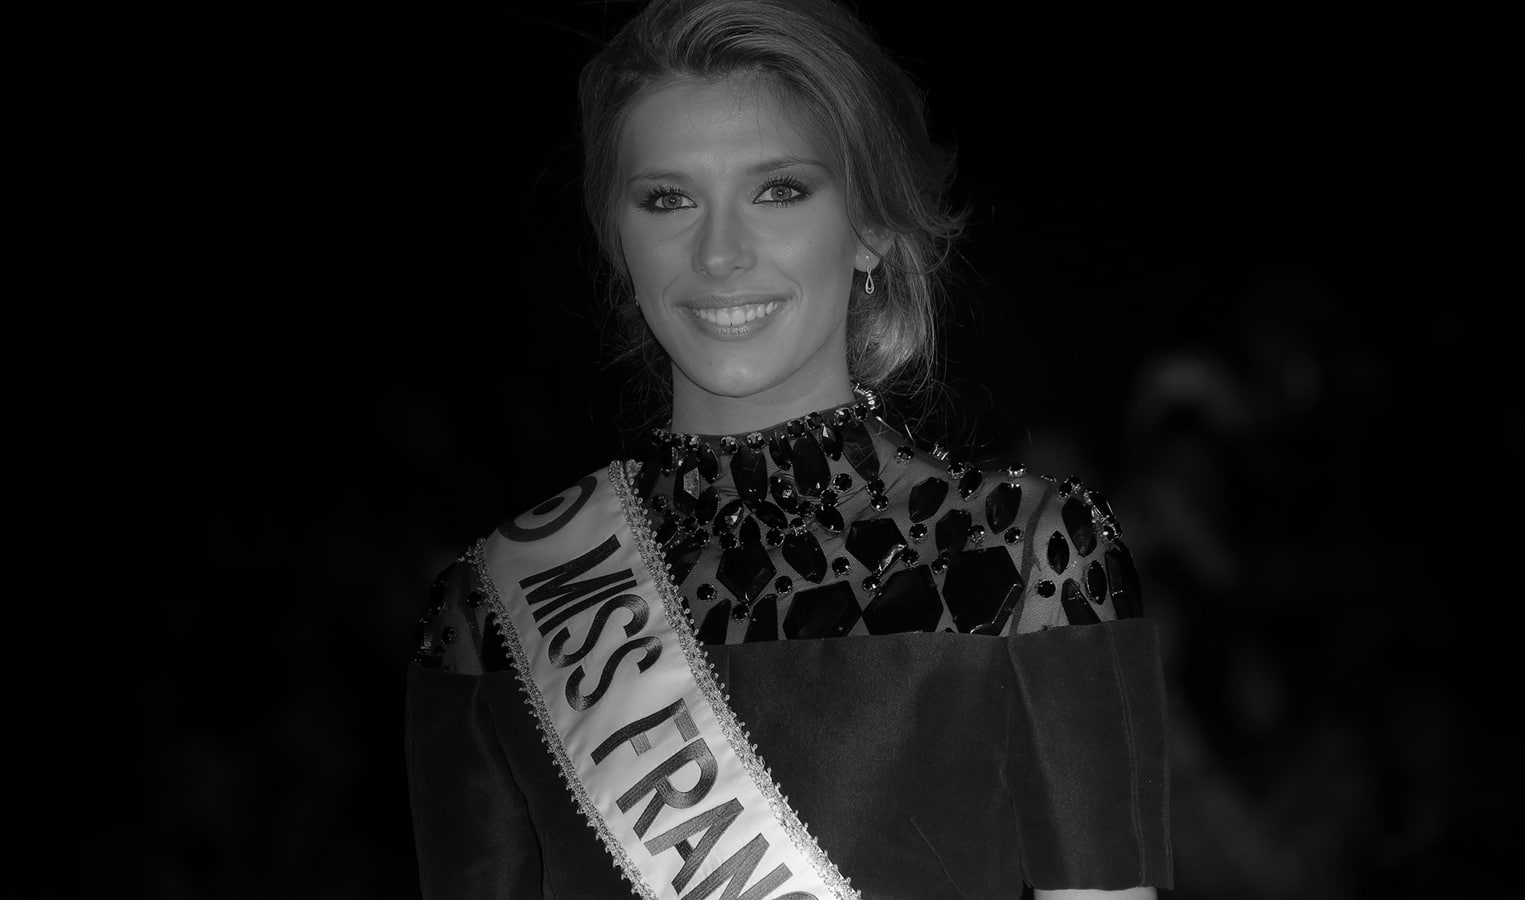 Miss-France-2015-Camille-Cerf-a-Cannes-habillee-par-on-aura-tout-vu-couture